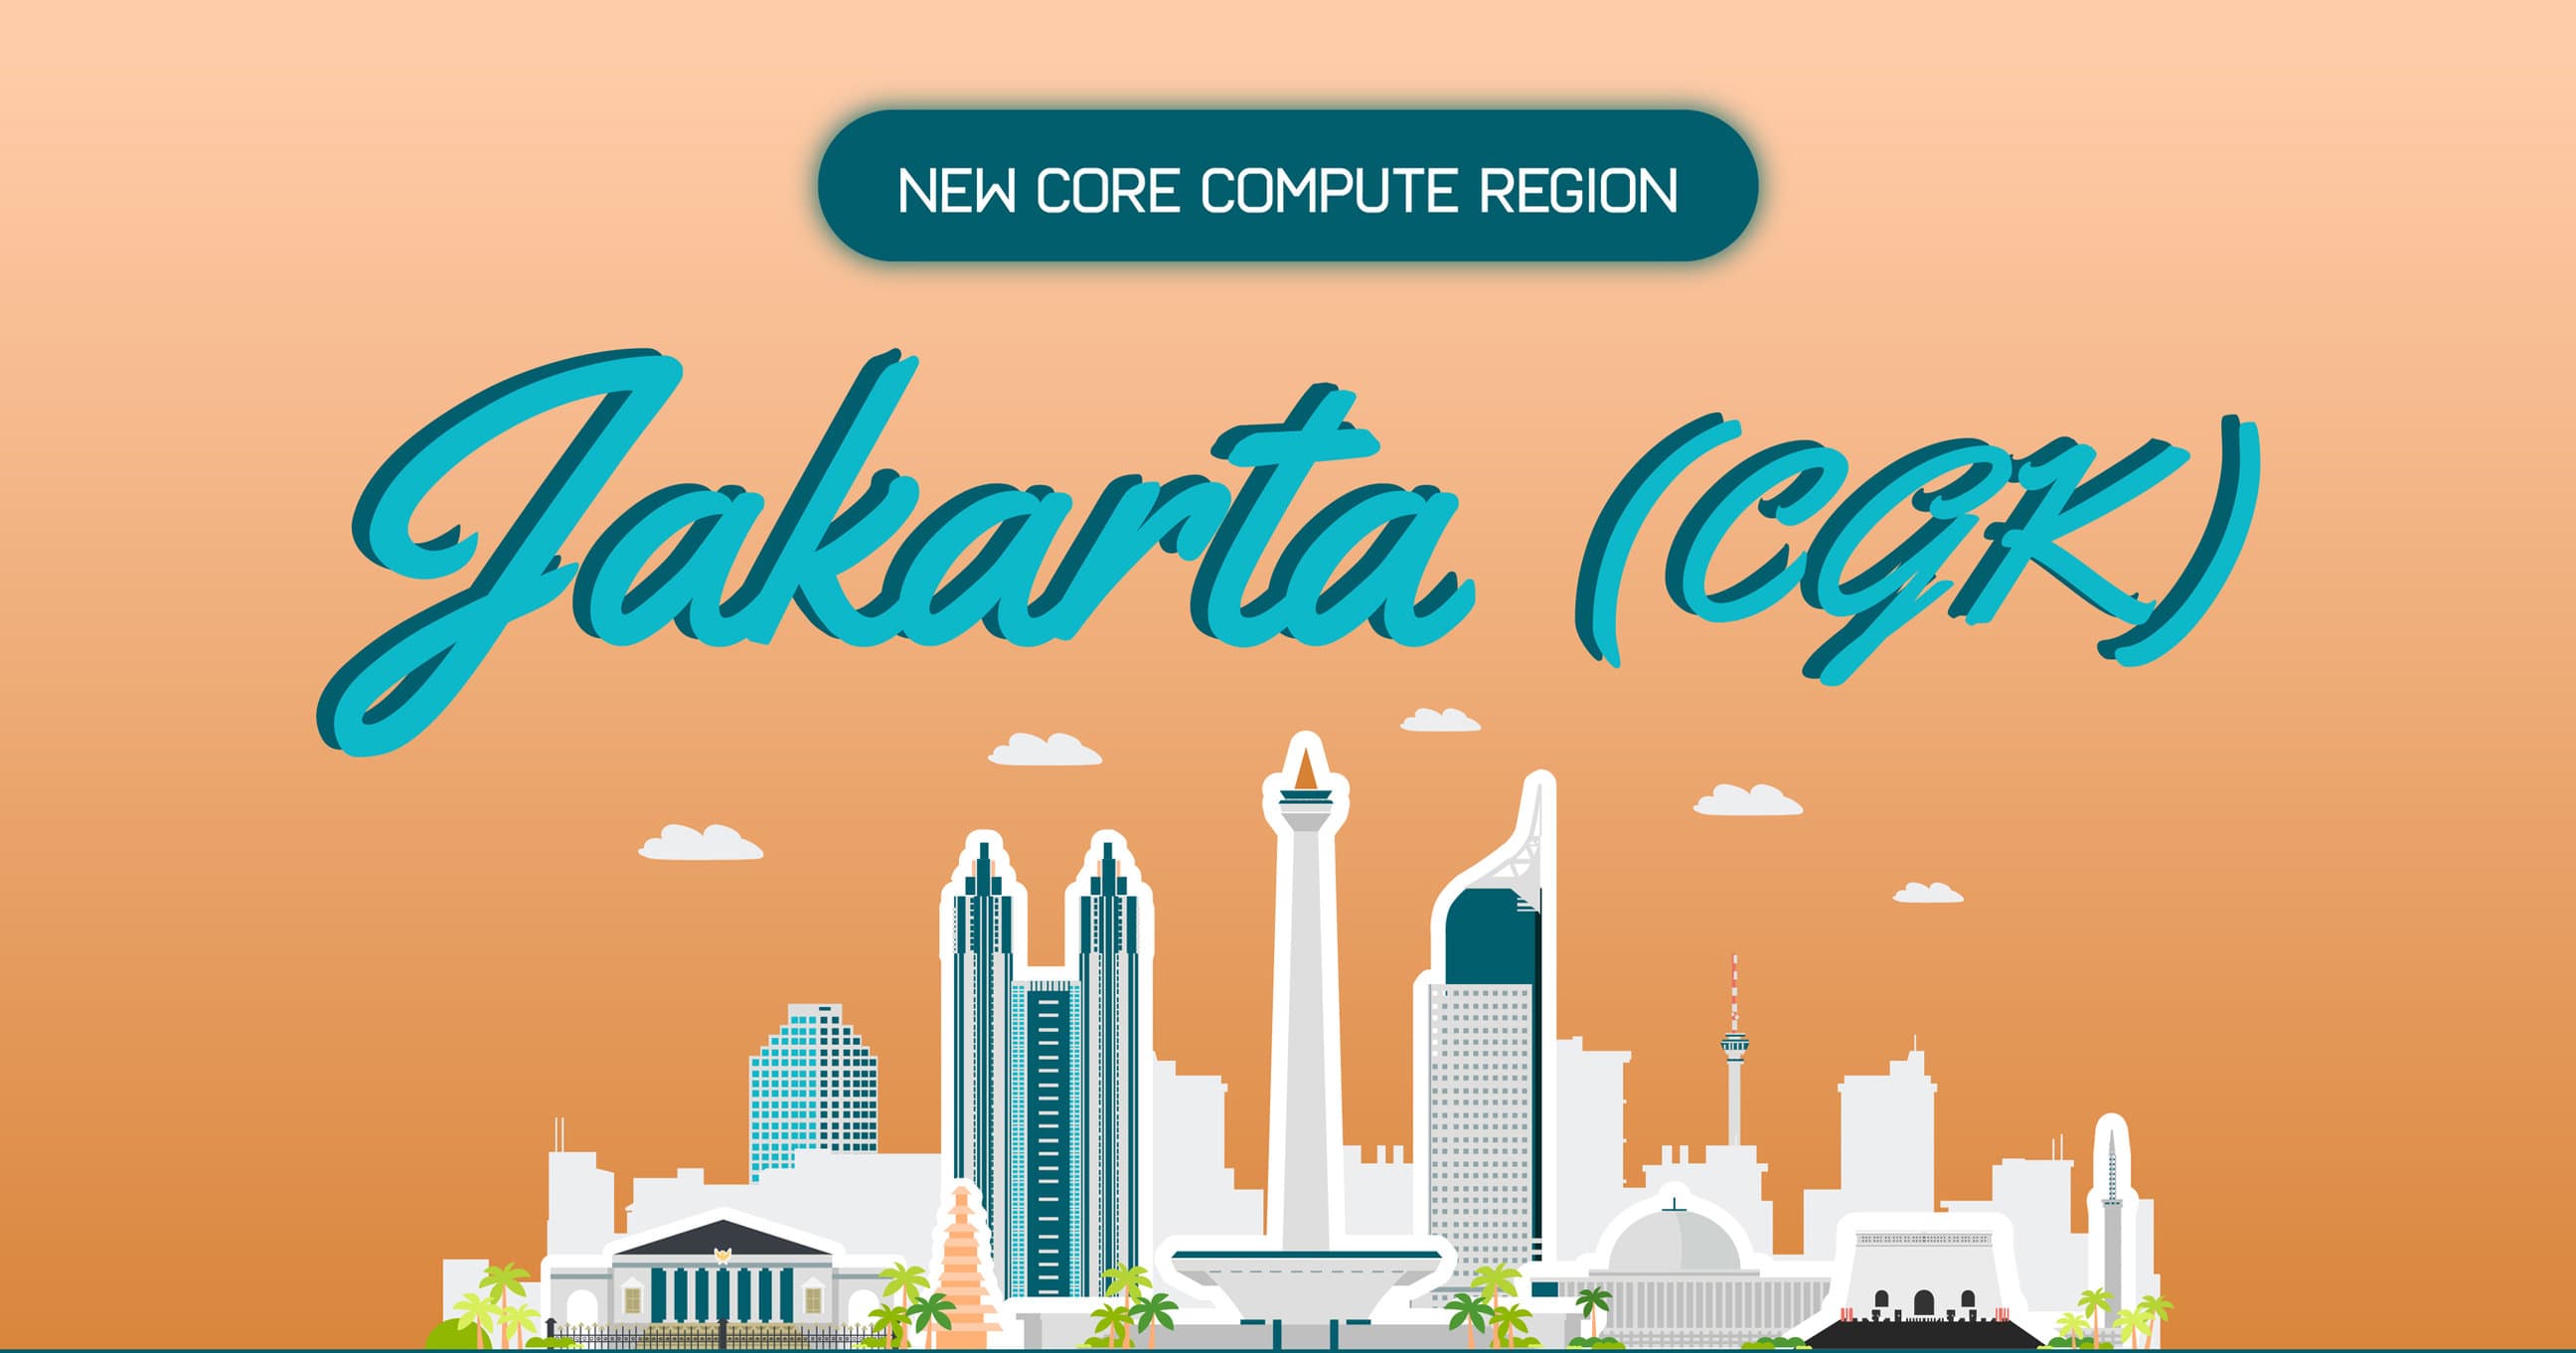 Ankündigung des Wachstums der asiatisch-pazifischen Core Compute Region mit Jakarta!